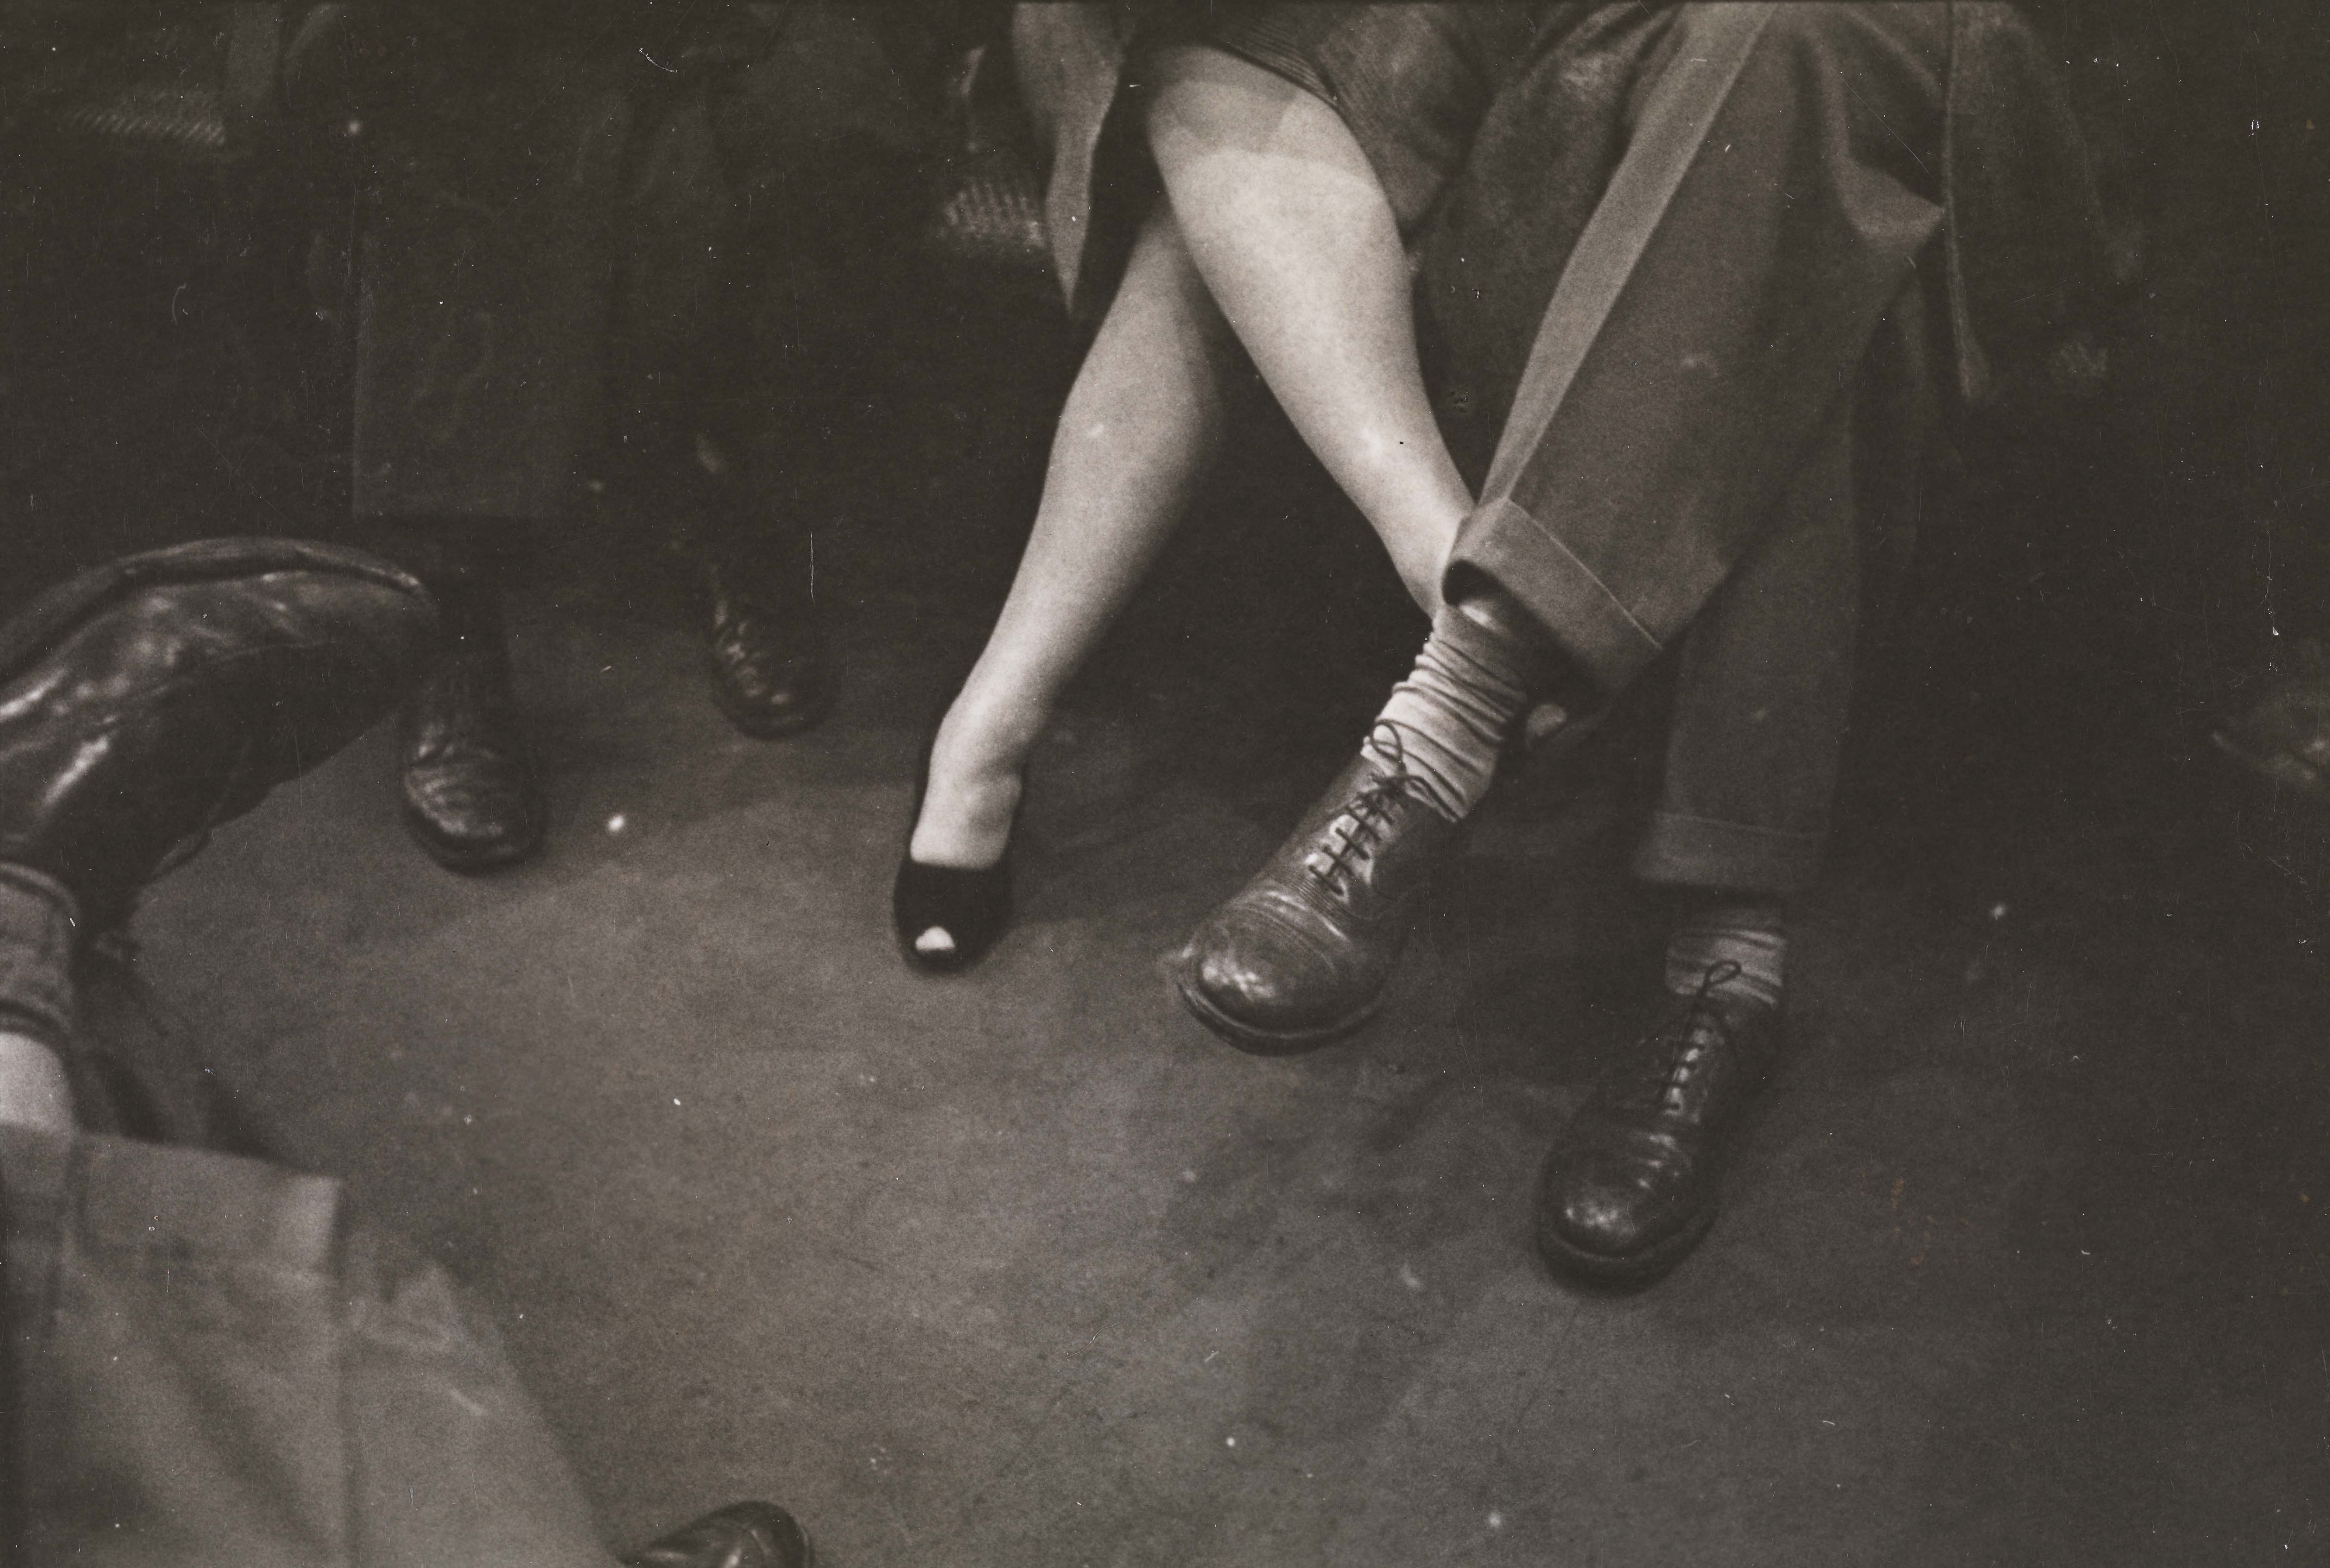 Stanley Kubrick. Vida y amor en el metro de Nueva York. Pareja jugando footsies en un metro. 1946. Museo de la ciudad de Nueva York. X2011.4.10292.90E